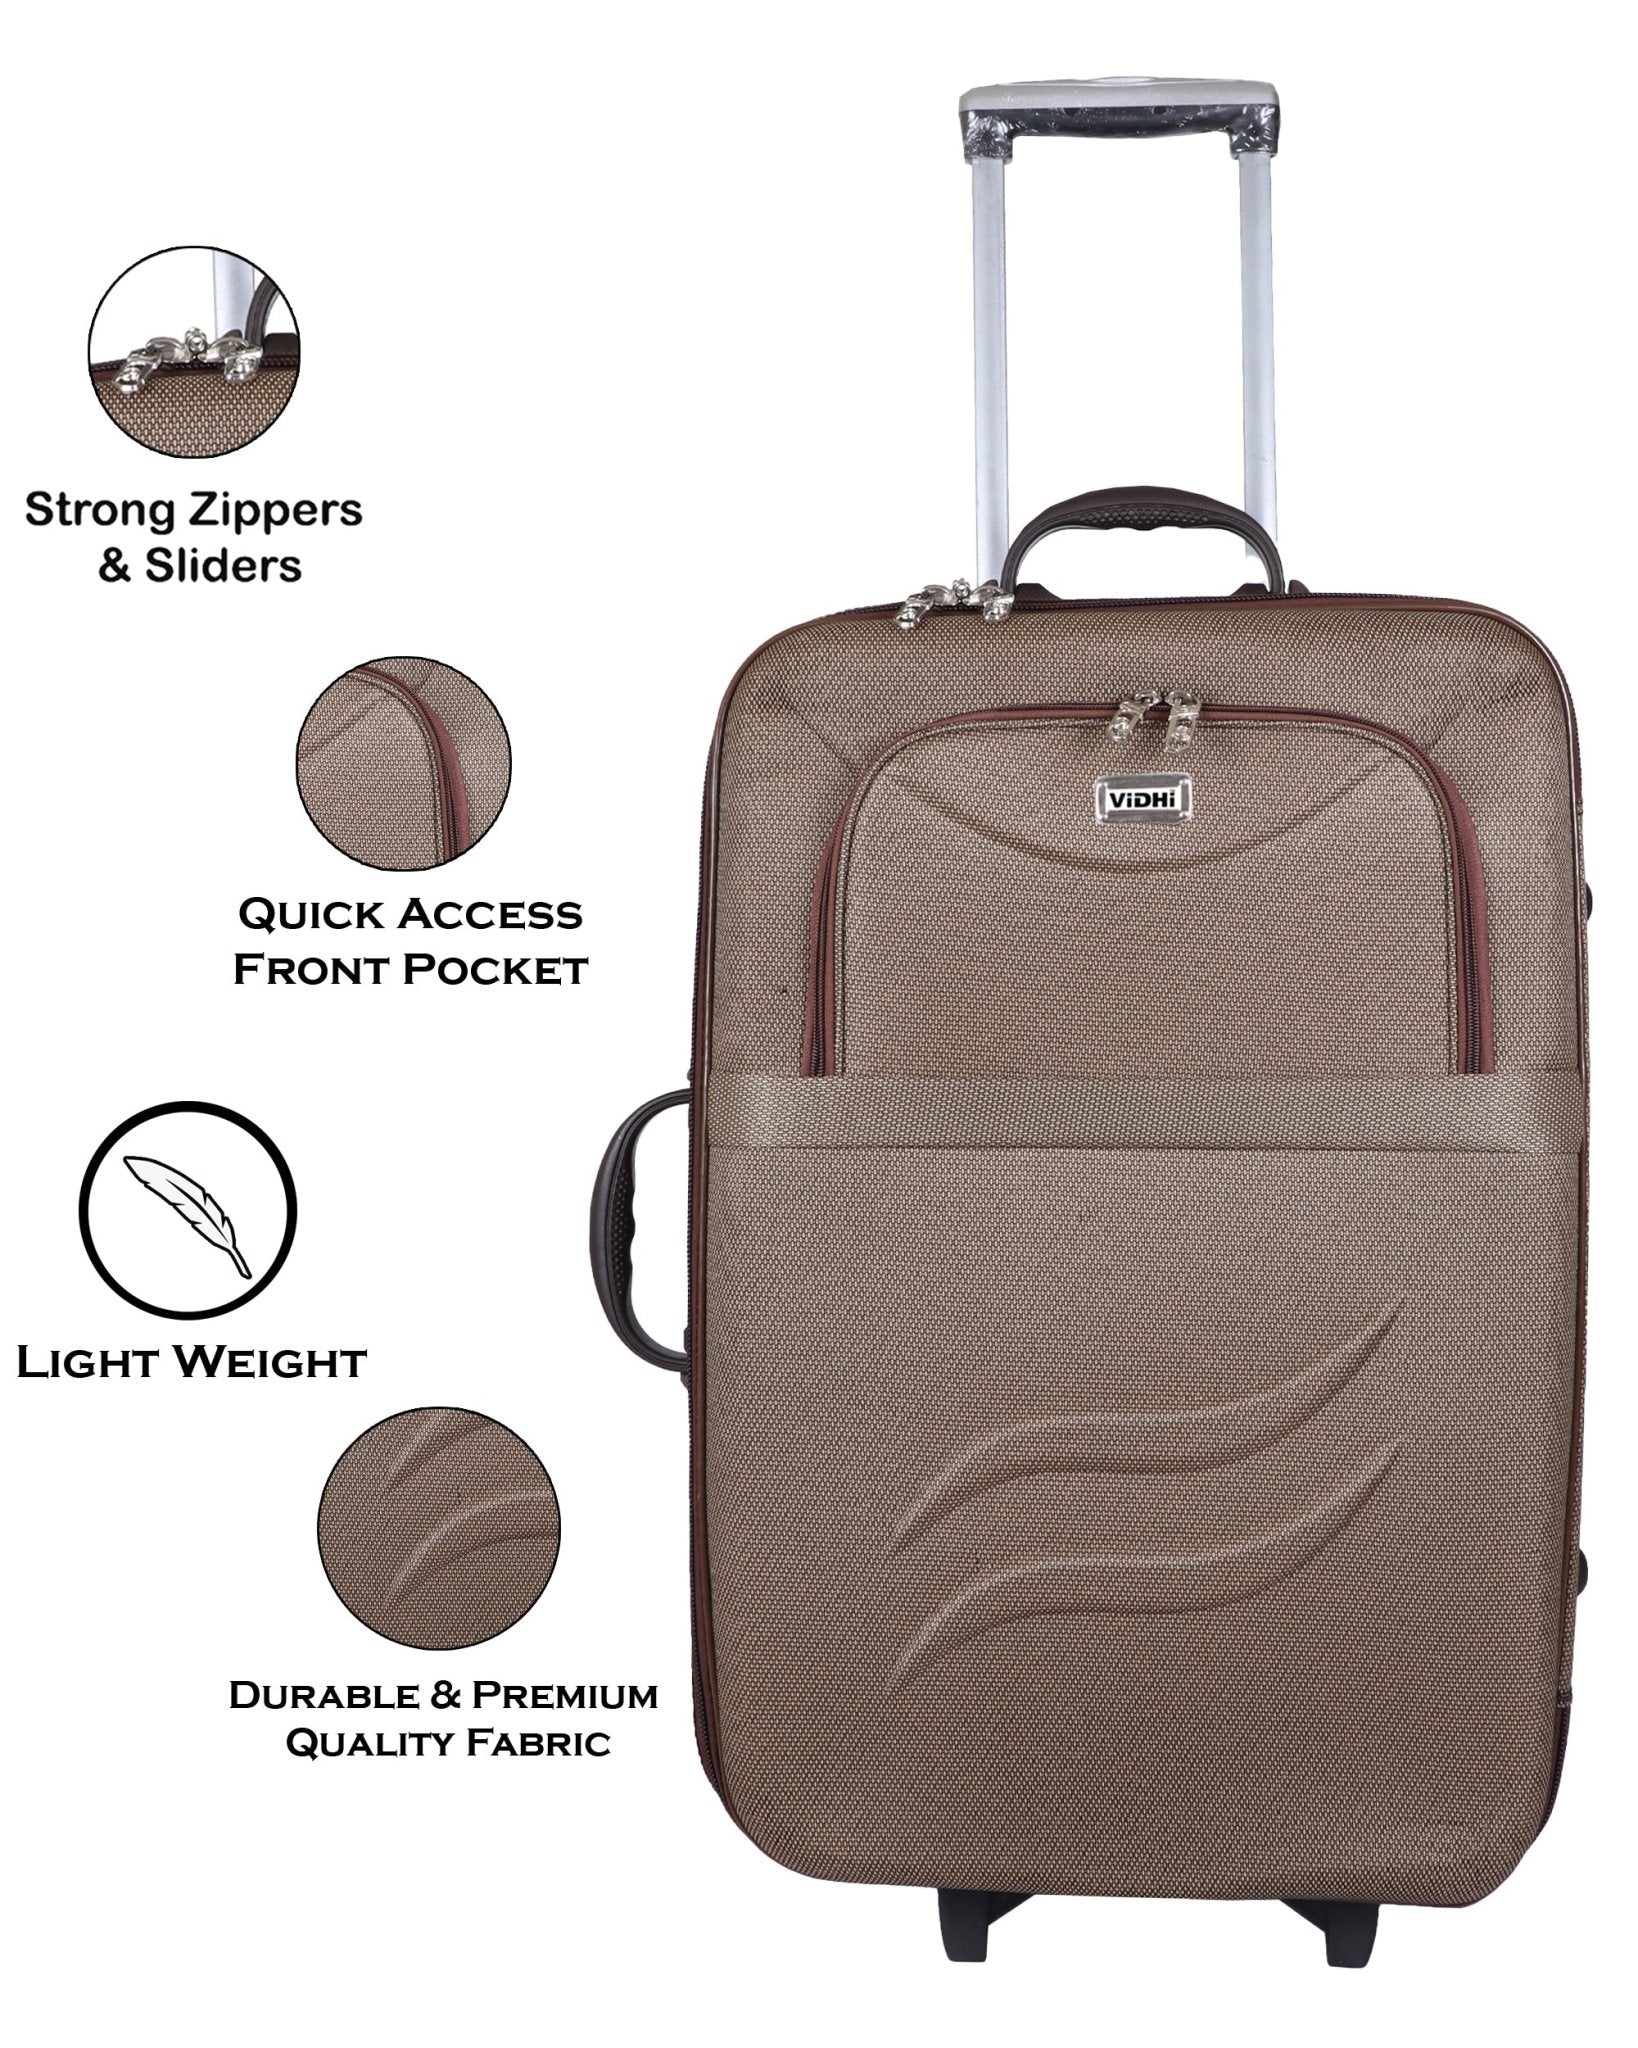 ये स्‍टाइलिश Luggage Bags यात्रा को बना देंगे आसान, Amazon Sale में उठाएं  74% के धमाकेदार डिस्‍काउंट का फायदा - luggage trolley bag for men and women  deals on amazon wardrobe refresh